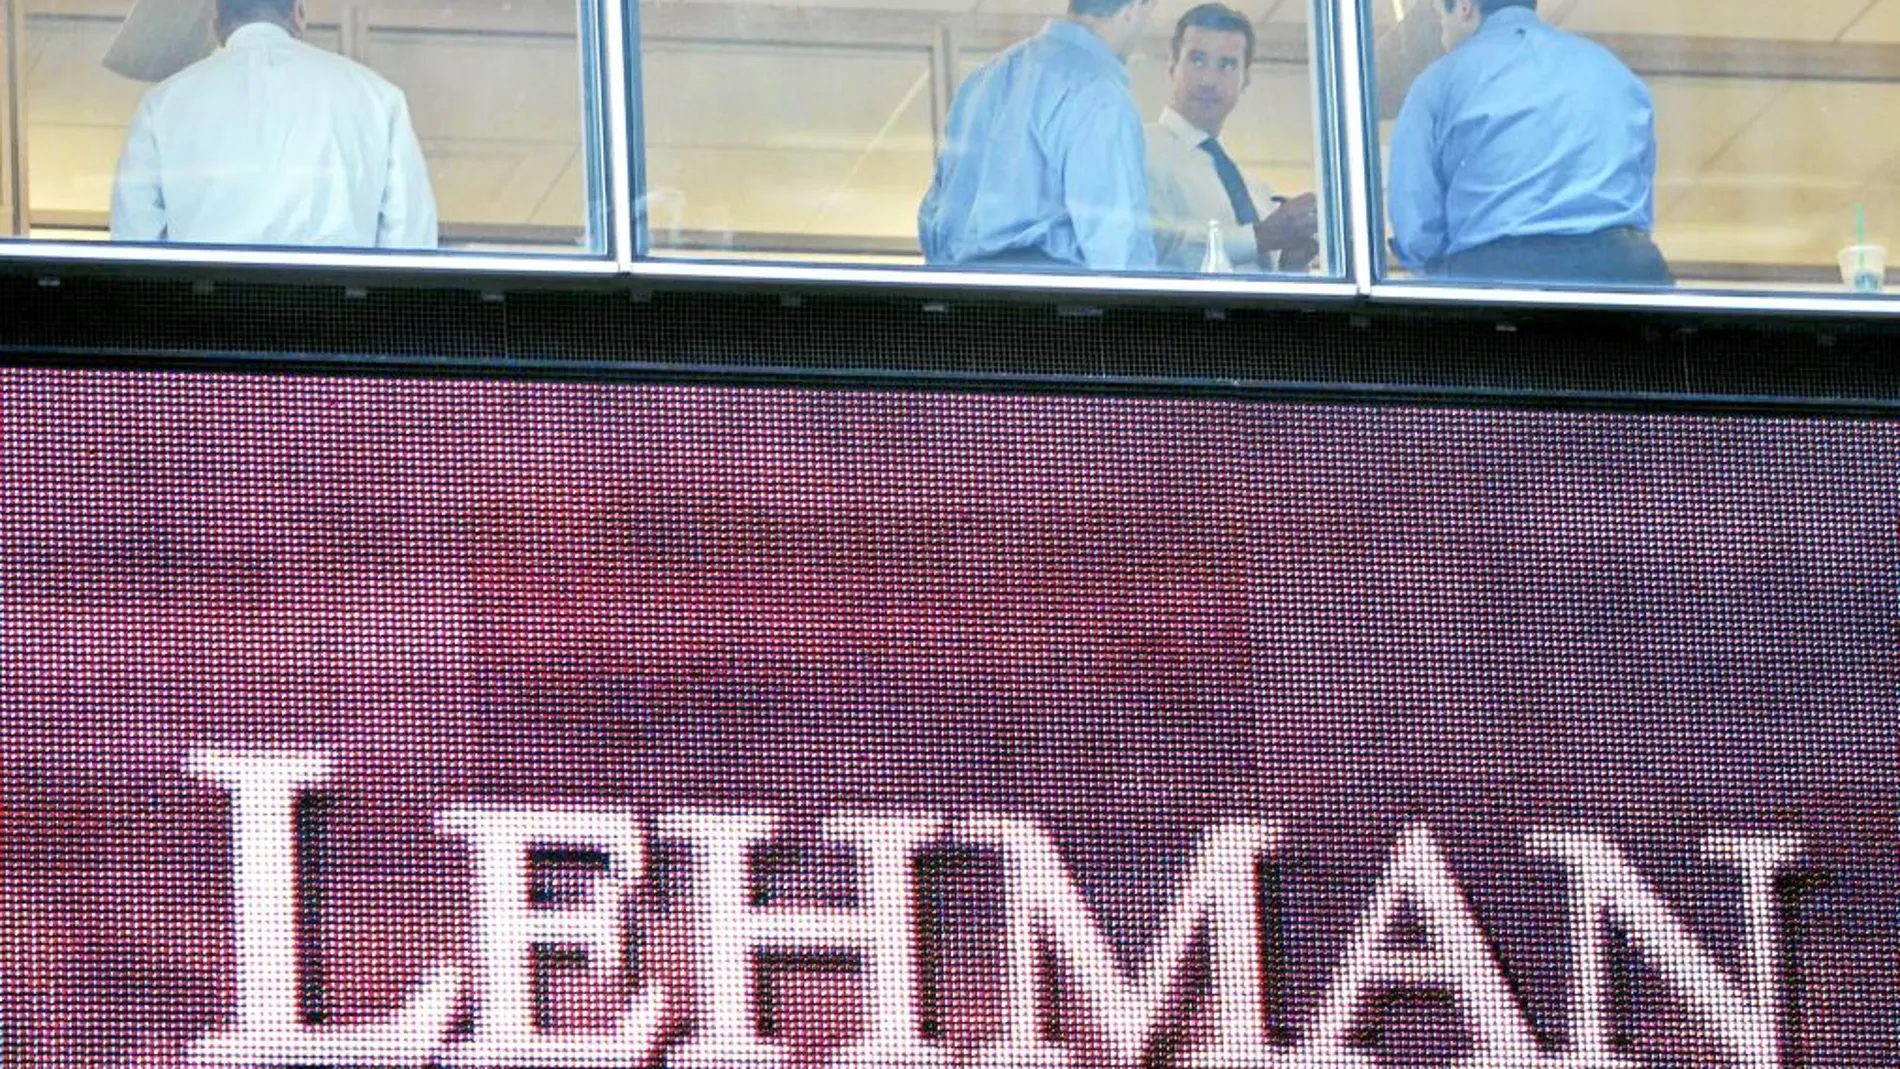 La quiebra de Lehman Brothers, el cuarto banco de inversión de EE UU, el 15 de septiembre de 2008, se considera el epicentro de la crisis financiera